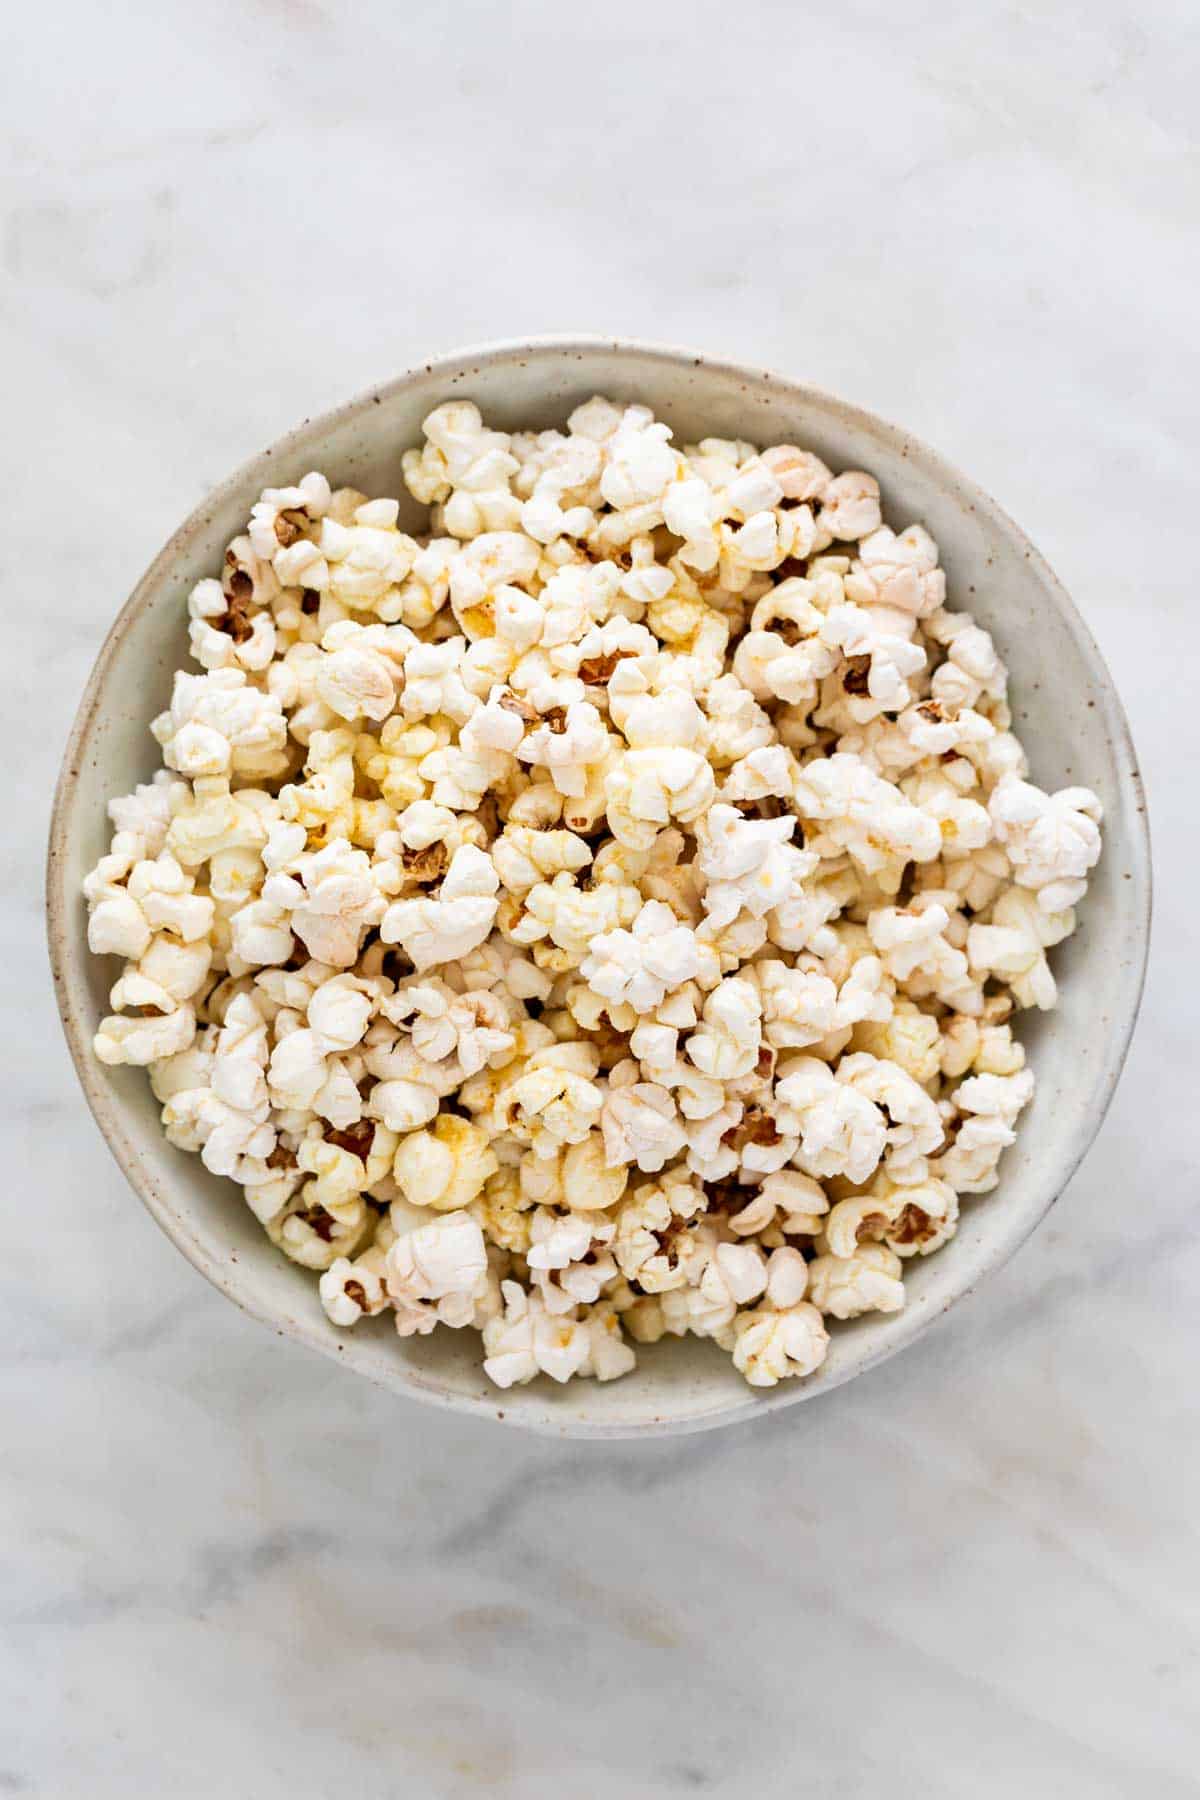 Vegan popcorn in a bowl.